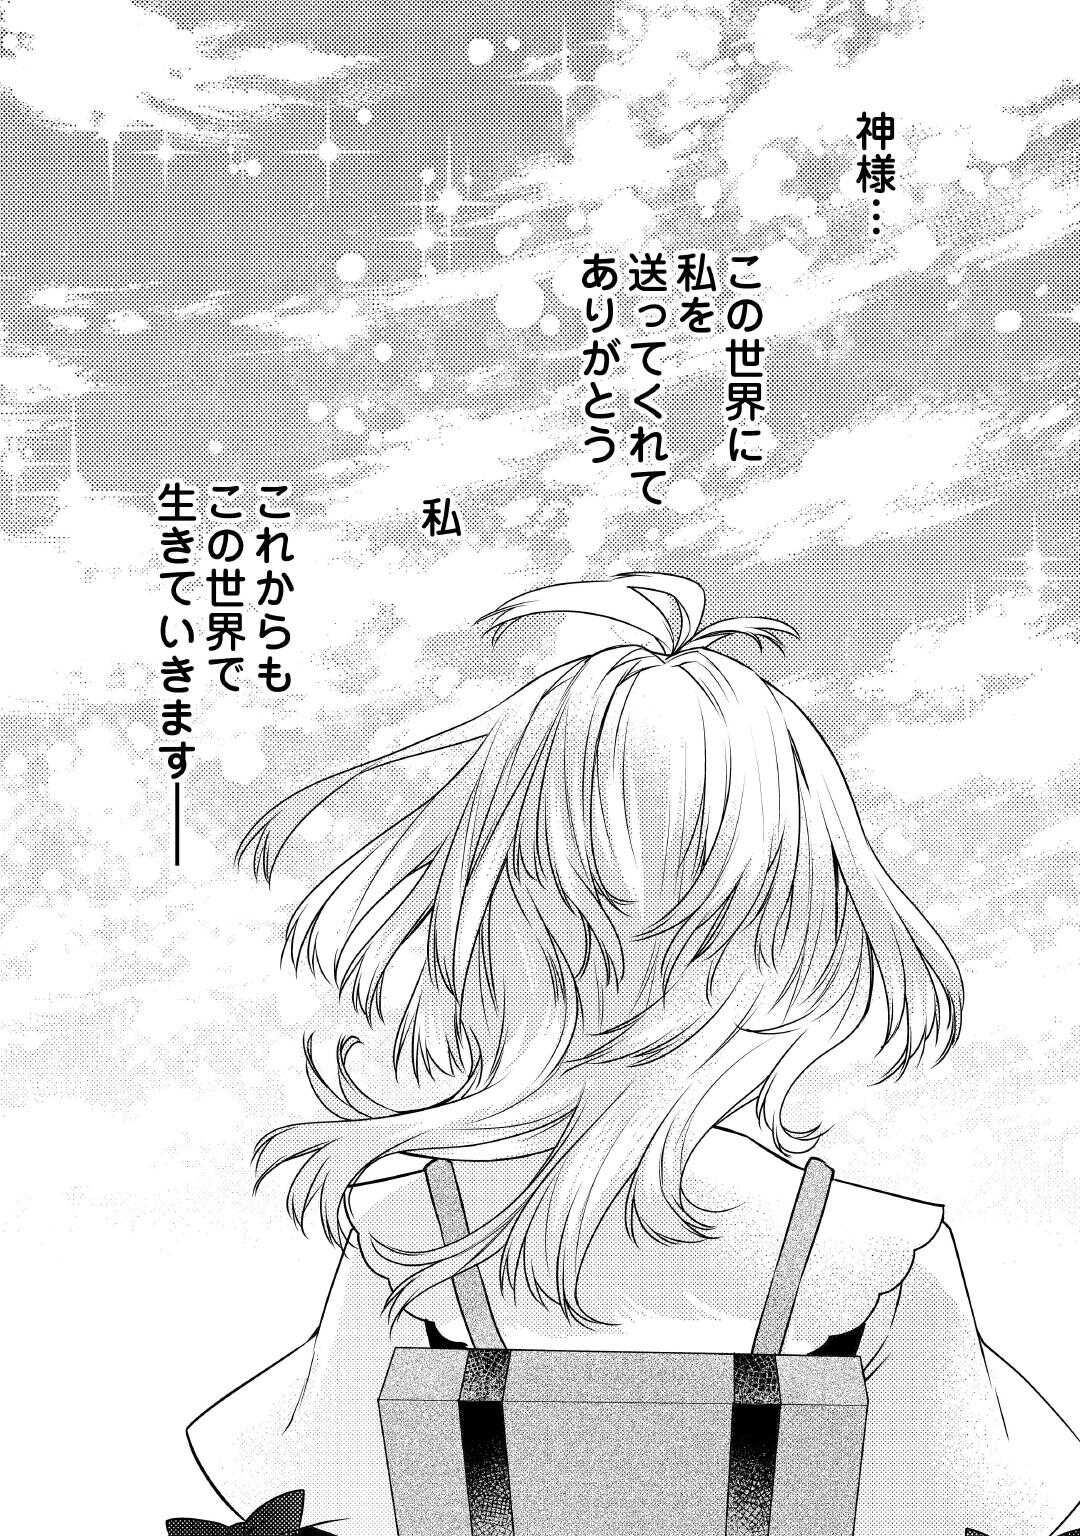 Toaru Chisana Mura No Chi Tona Tanya Ya San - Chapter 20 - Page 18